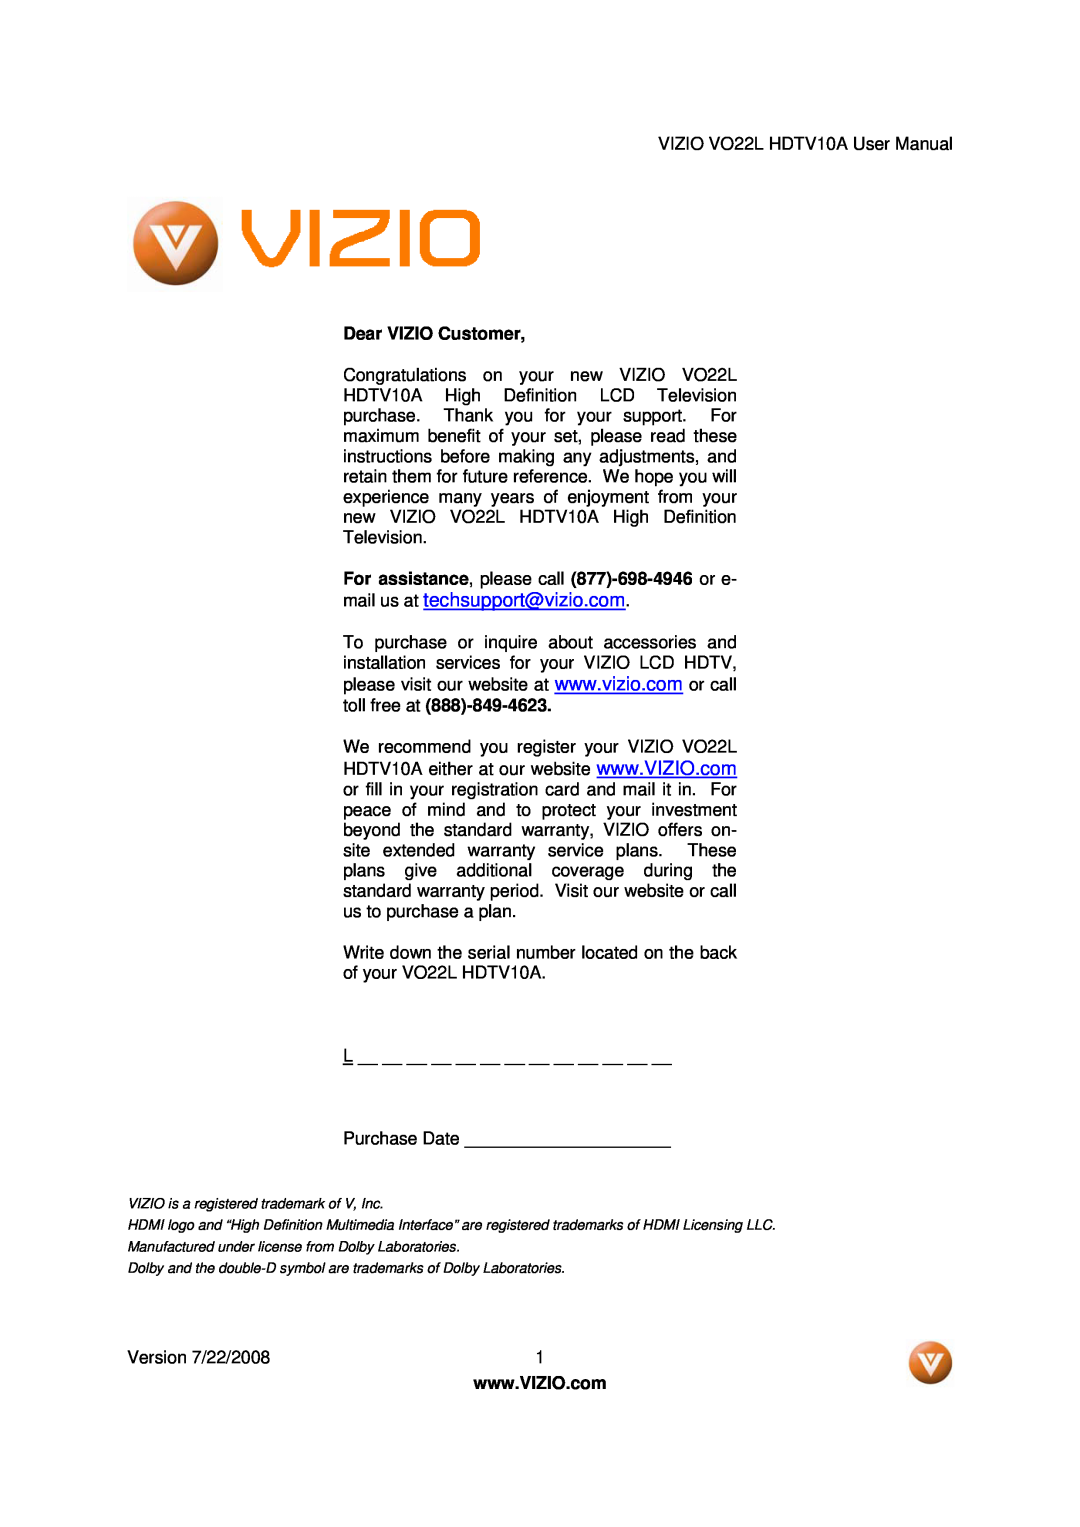 Vizio VO22L user manual Dear VIZIO Customer, For assistance, please call 877-698-4946 or e 